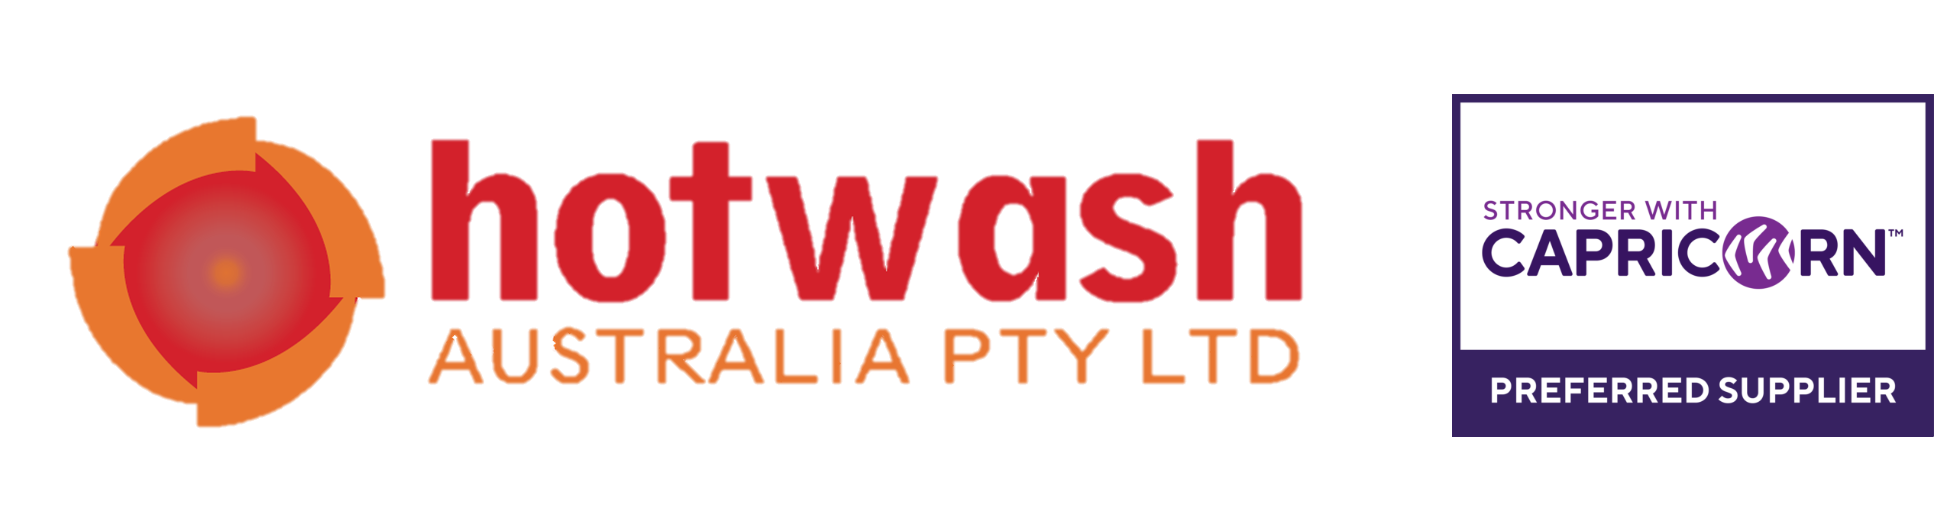 Hotwash header and sponsor logo